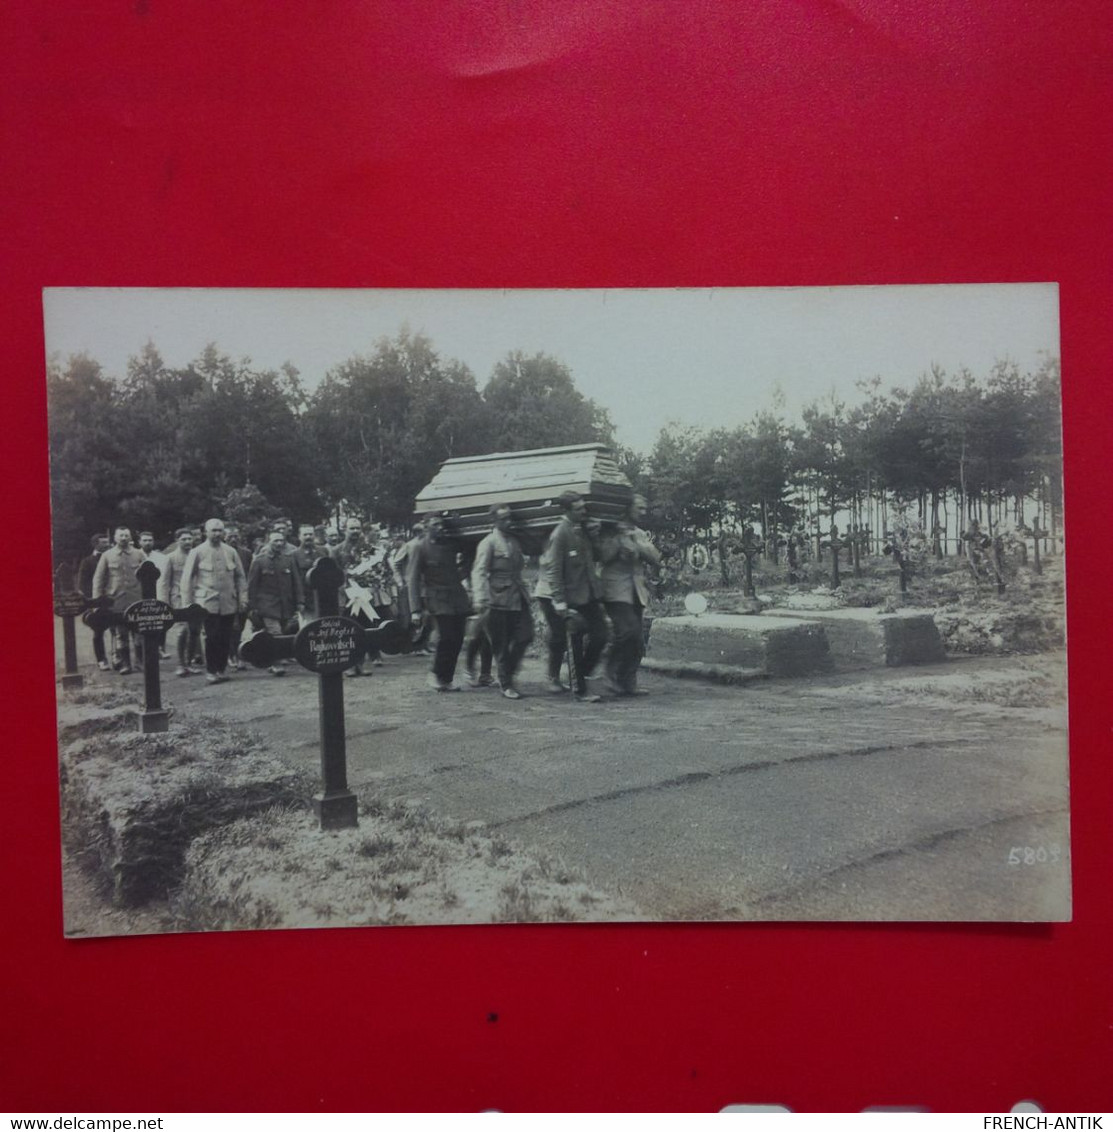 CARTE PHOTO CAMP KONIGSBRUCK SOLDAT PRISONNIER ENTERREMENT - Weltkrieg 1914-18